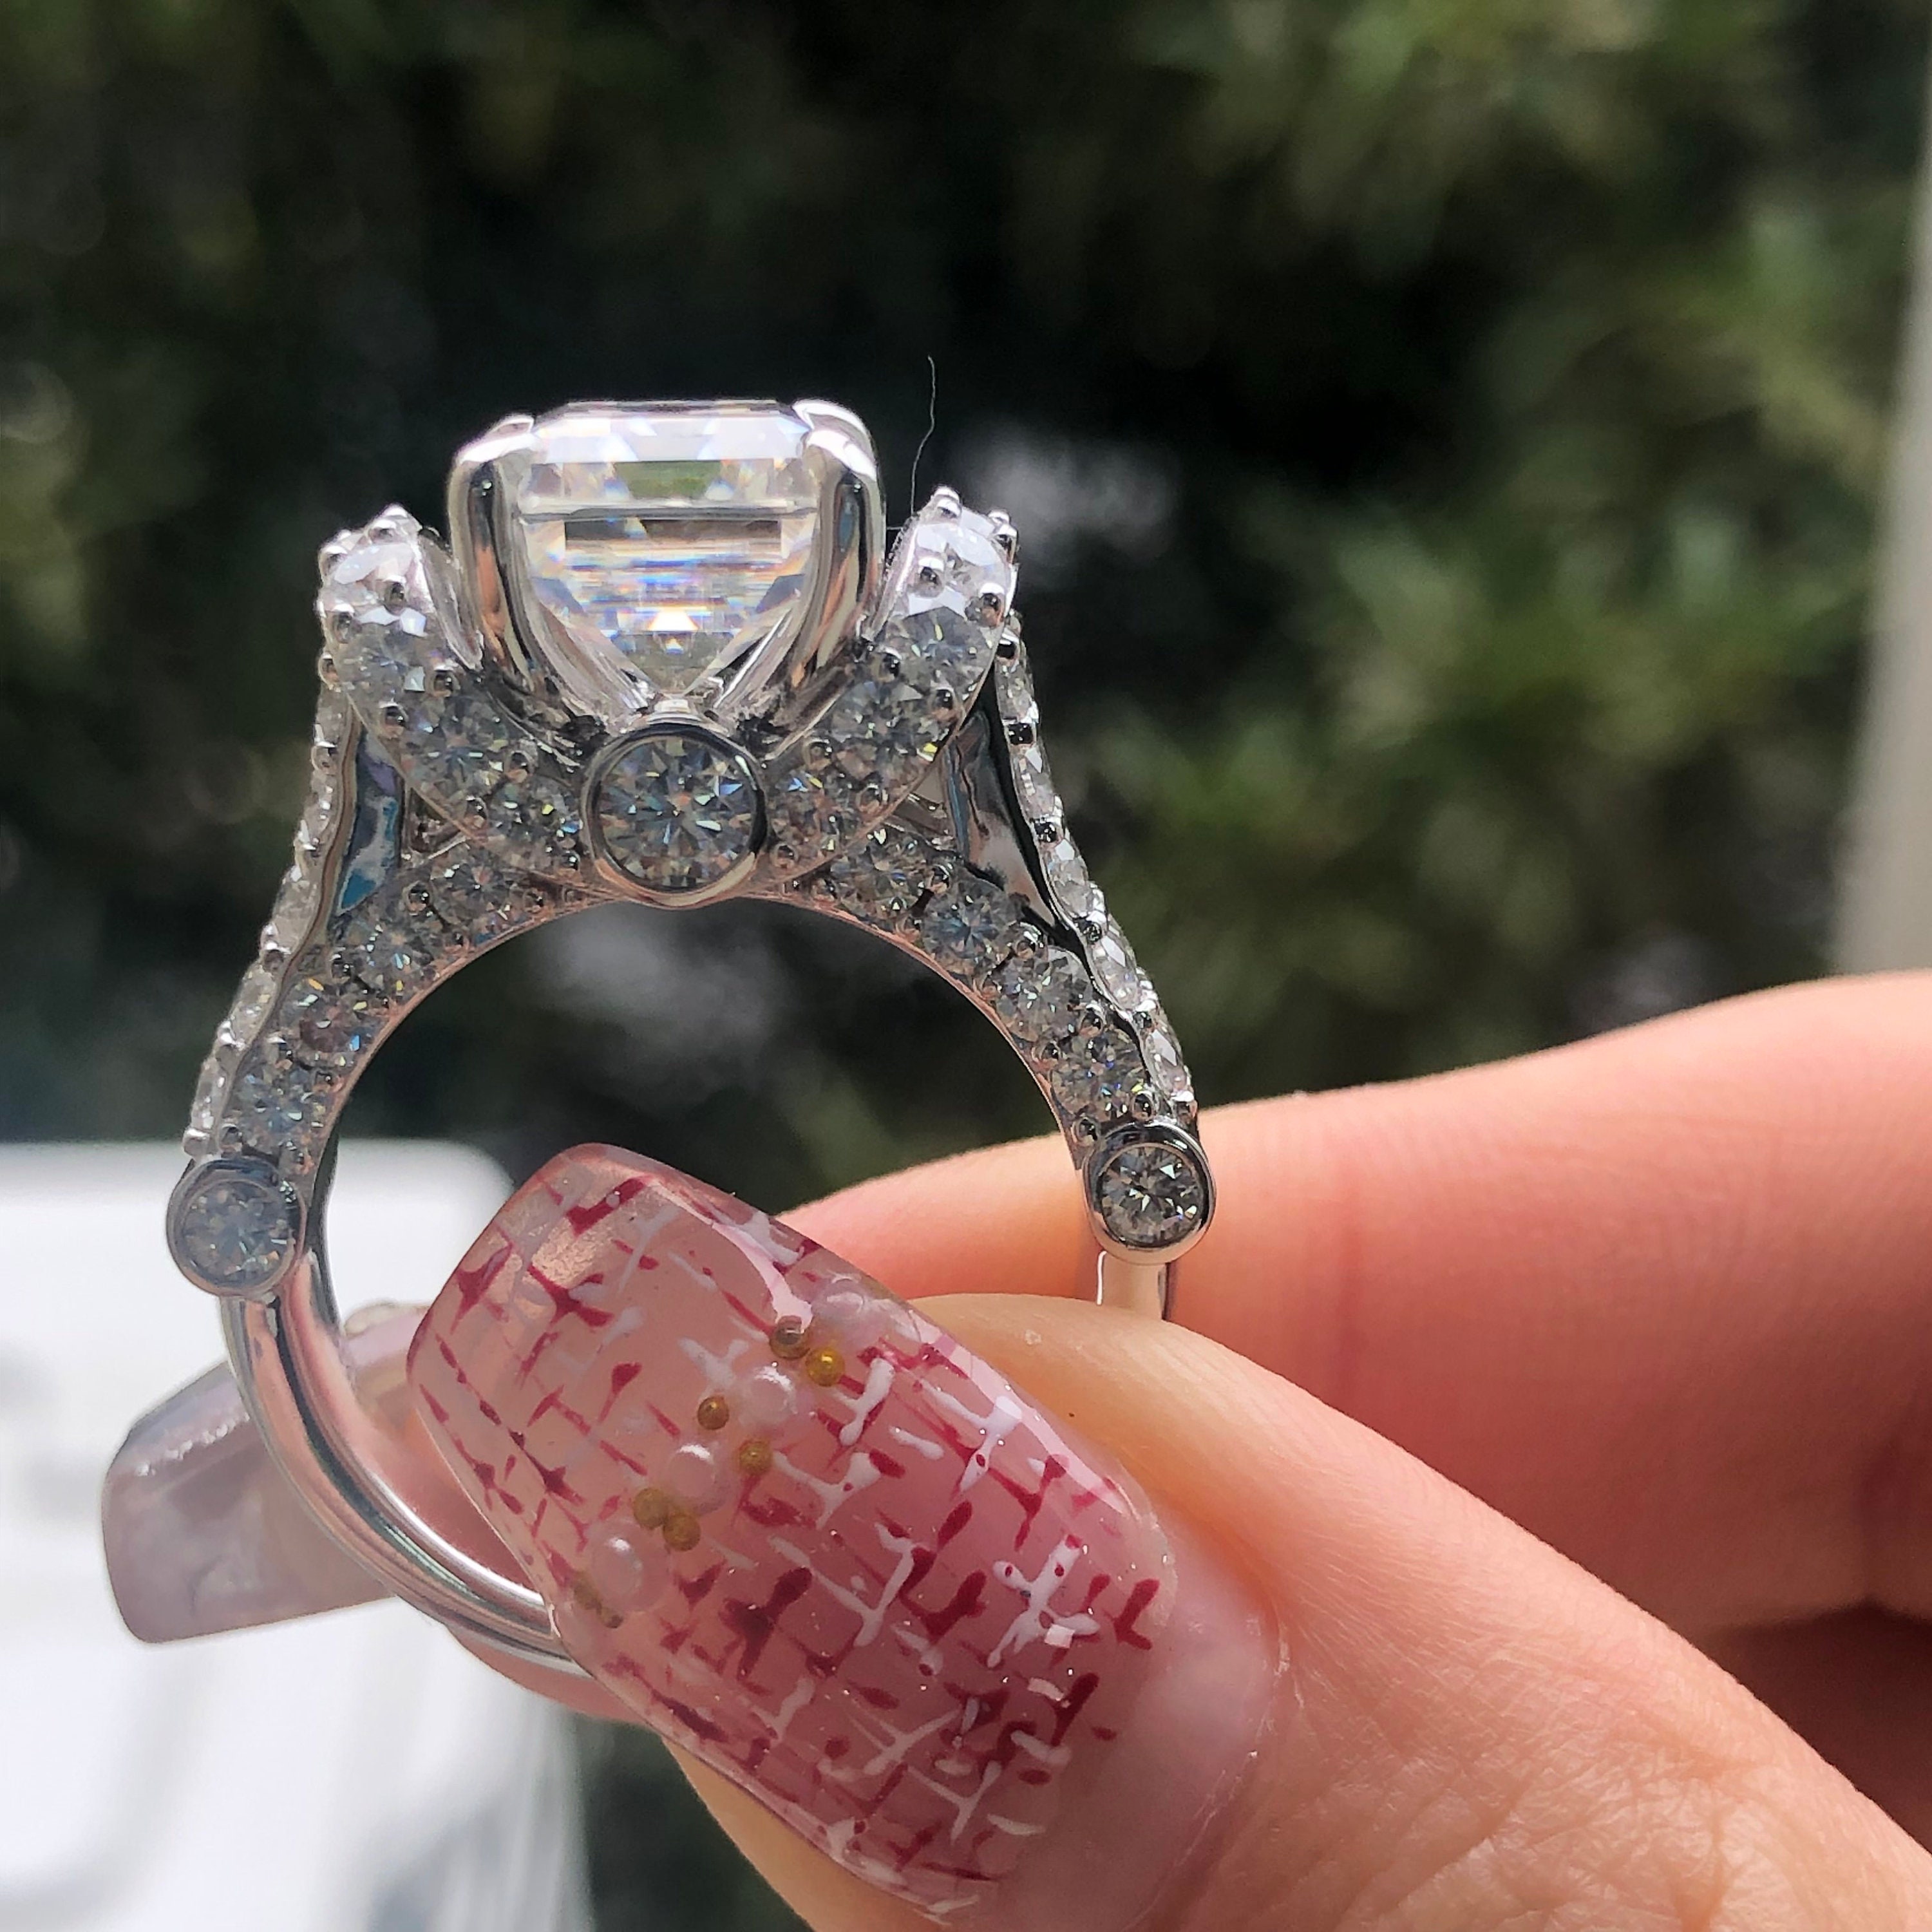 Huge Emerald Cut Diamond Ring - Mens 7.21 Carat E SI1